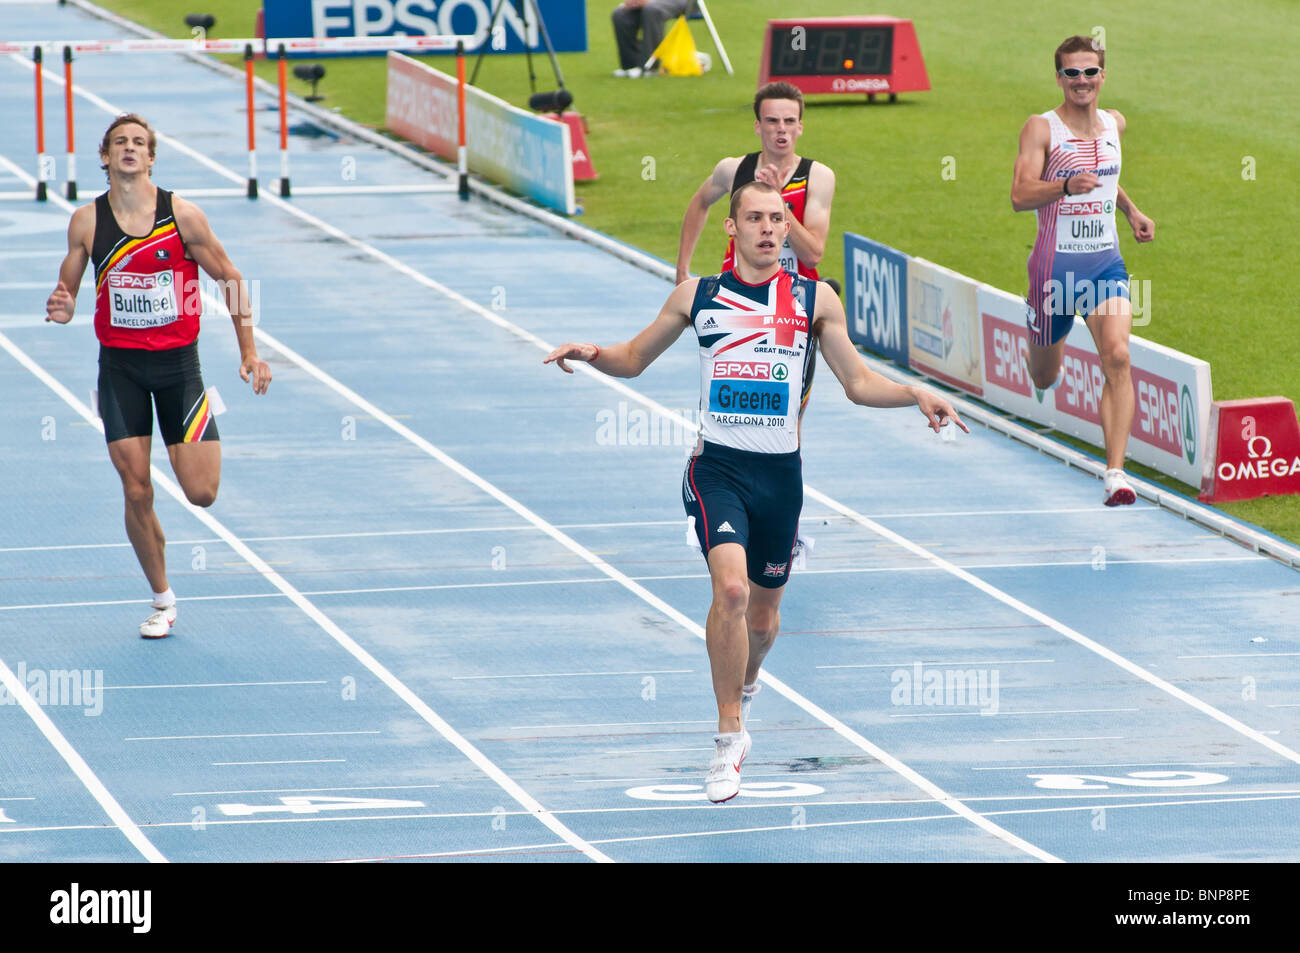 Le 29 juillet à Barcelone 2010 Championnats d'Europe d'athlétisme (400m haies hommes) Banque D'Images